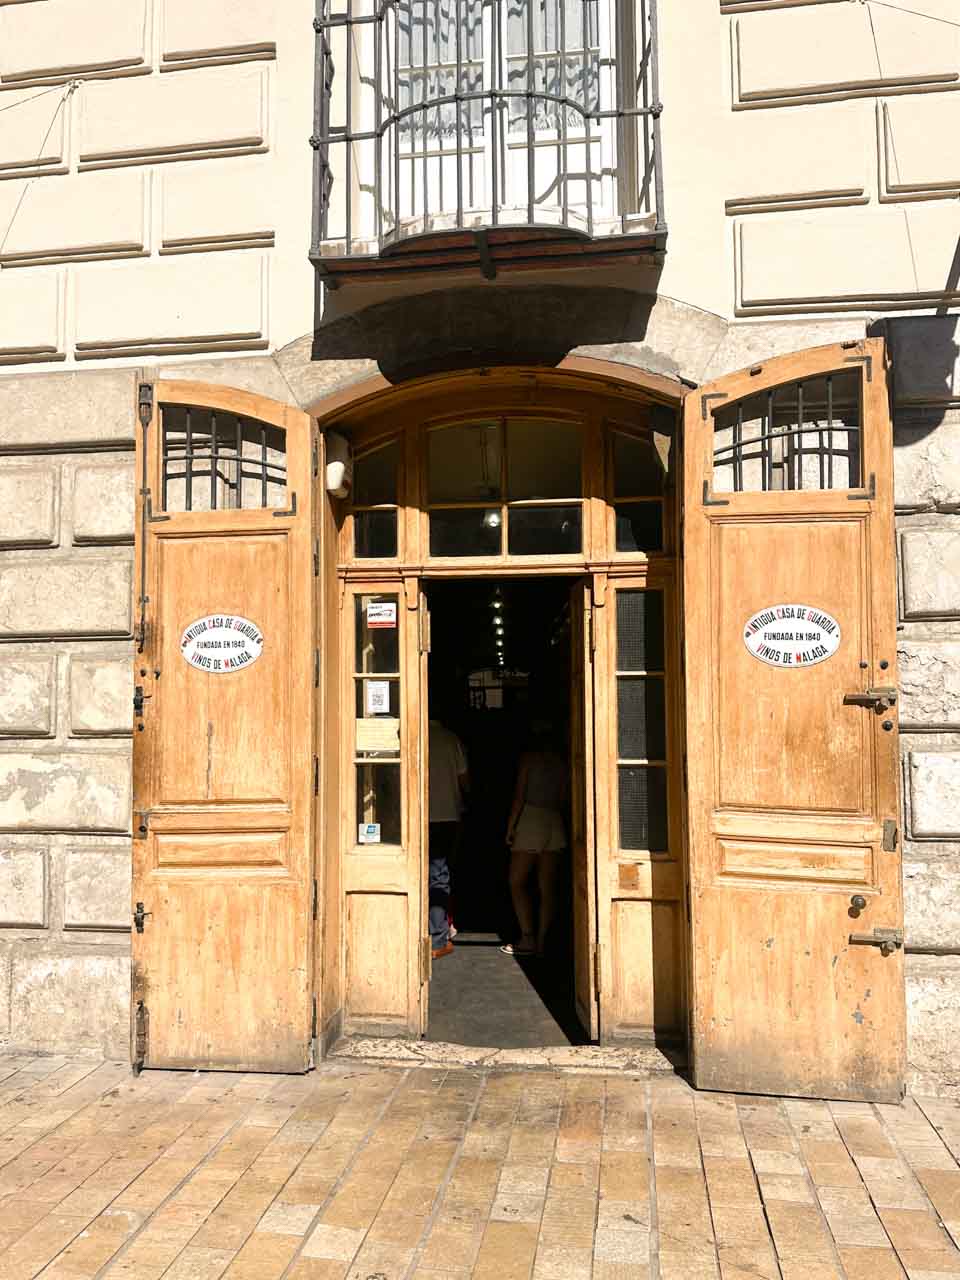 Entrance to Antigua Casa de Guardia in Malaga, Spain